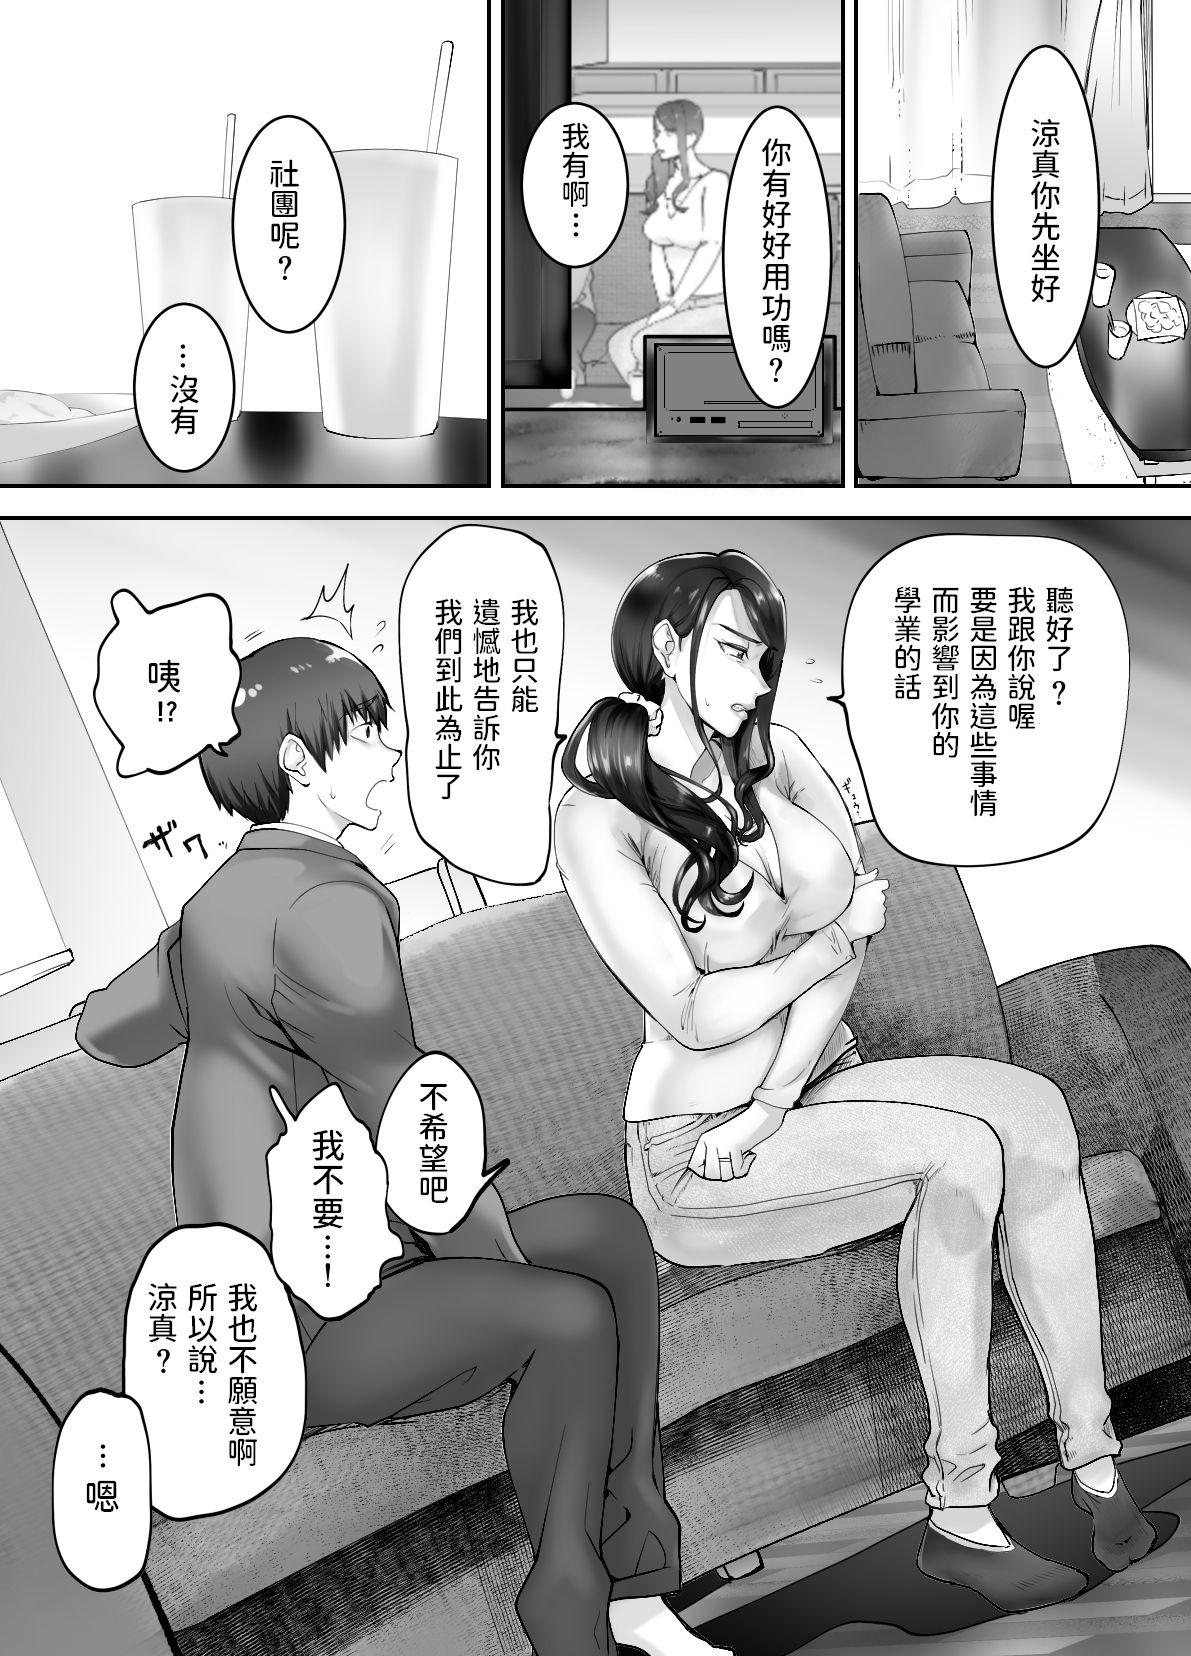 Culo Osananajimi ga Mama to Yatte Imasu. 3 - Original De Quatro - Page 9